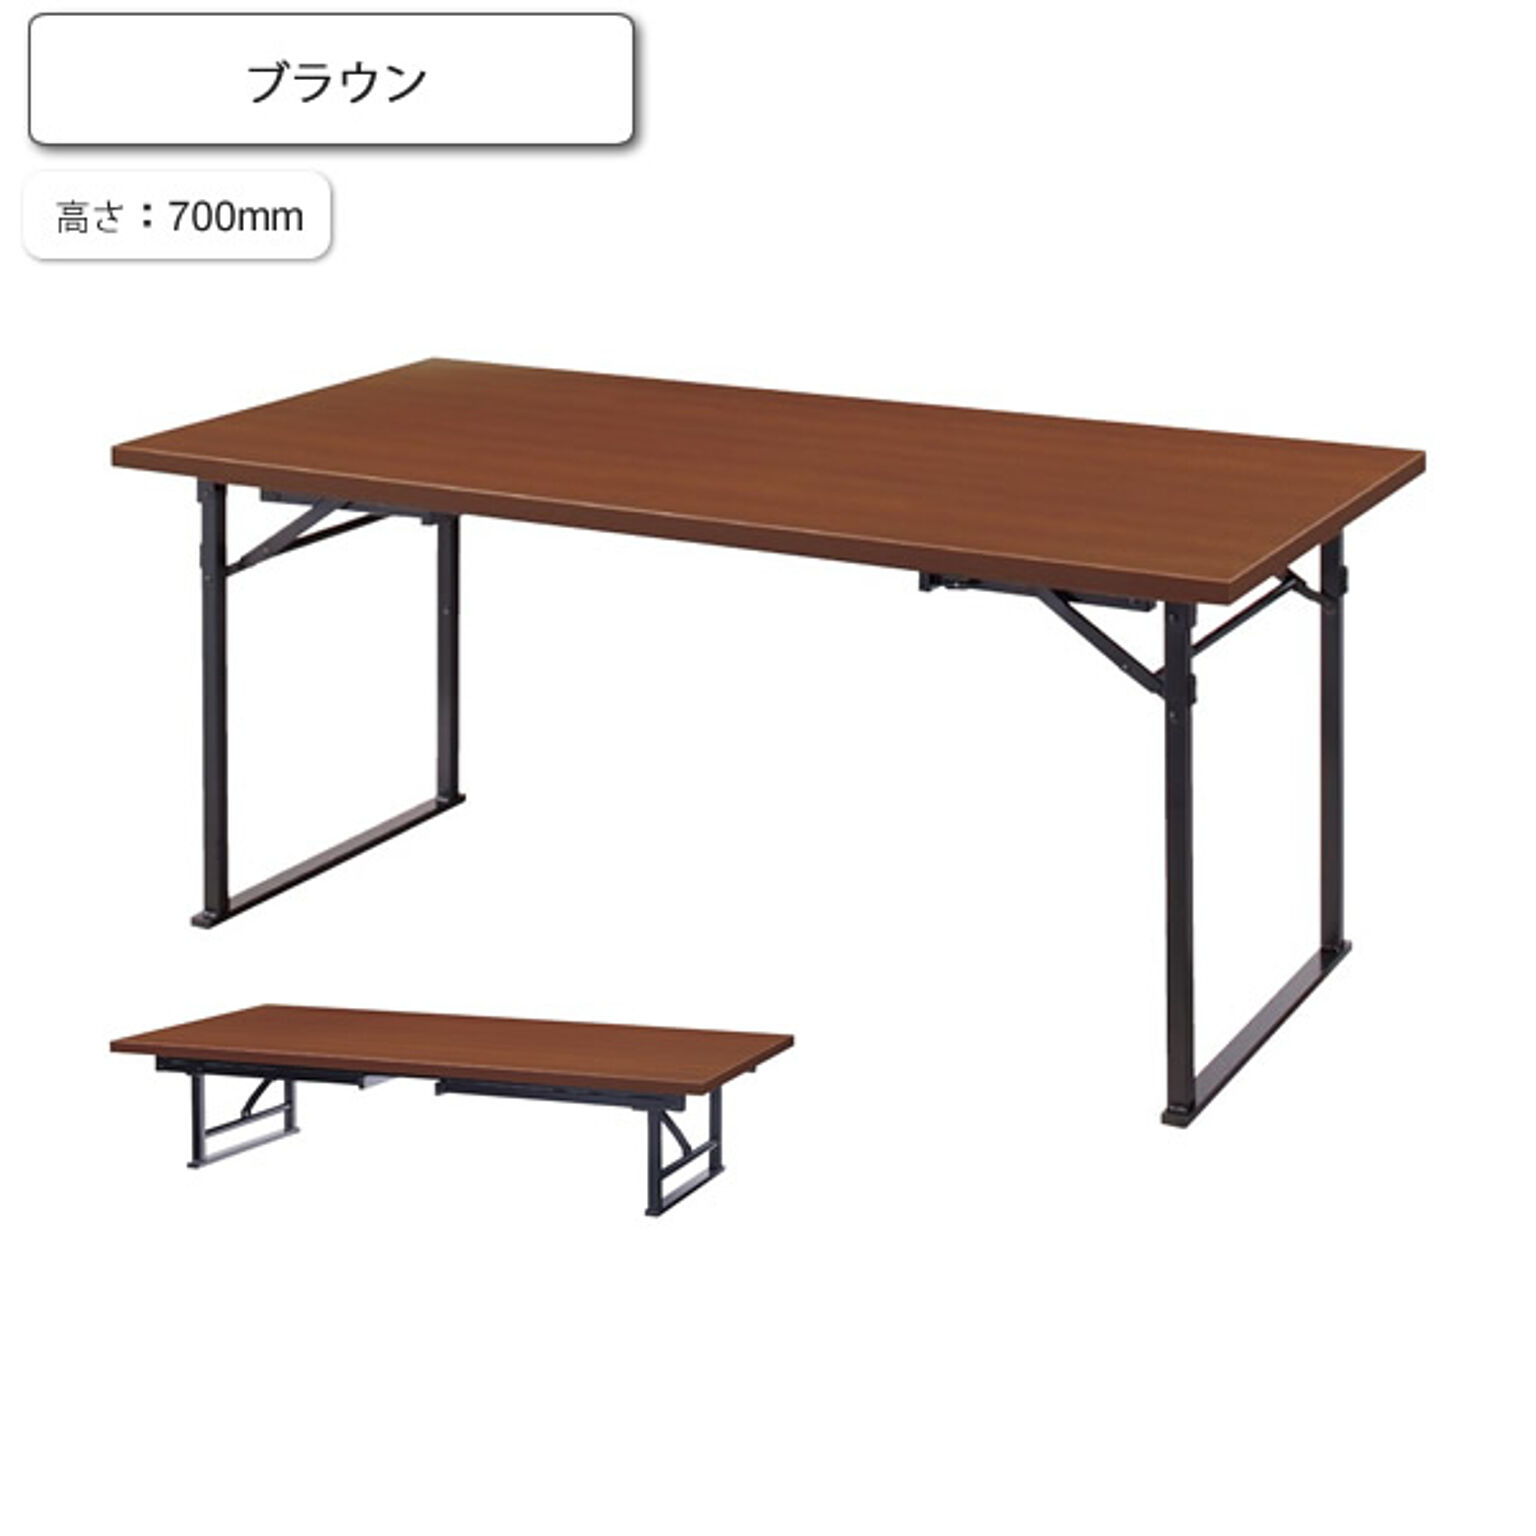 ダイニングテーブル 座卓 コンバーチブル H700 千歳 ブラウン 業務用家具シリーズ JAPANESE（ジャパニーズ）  店舗 施設 コントラクト